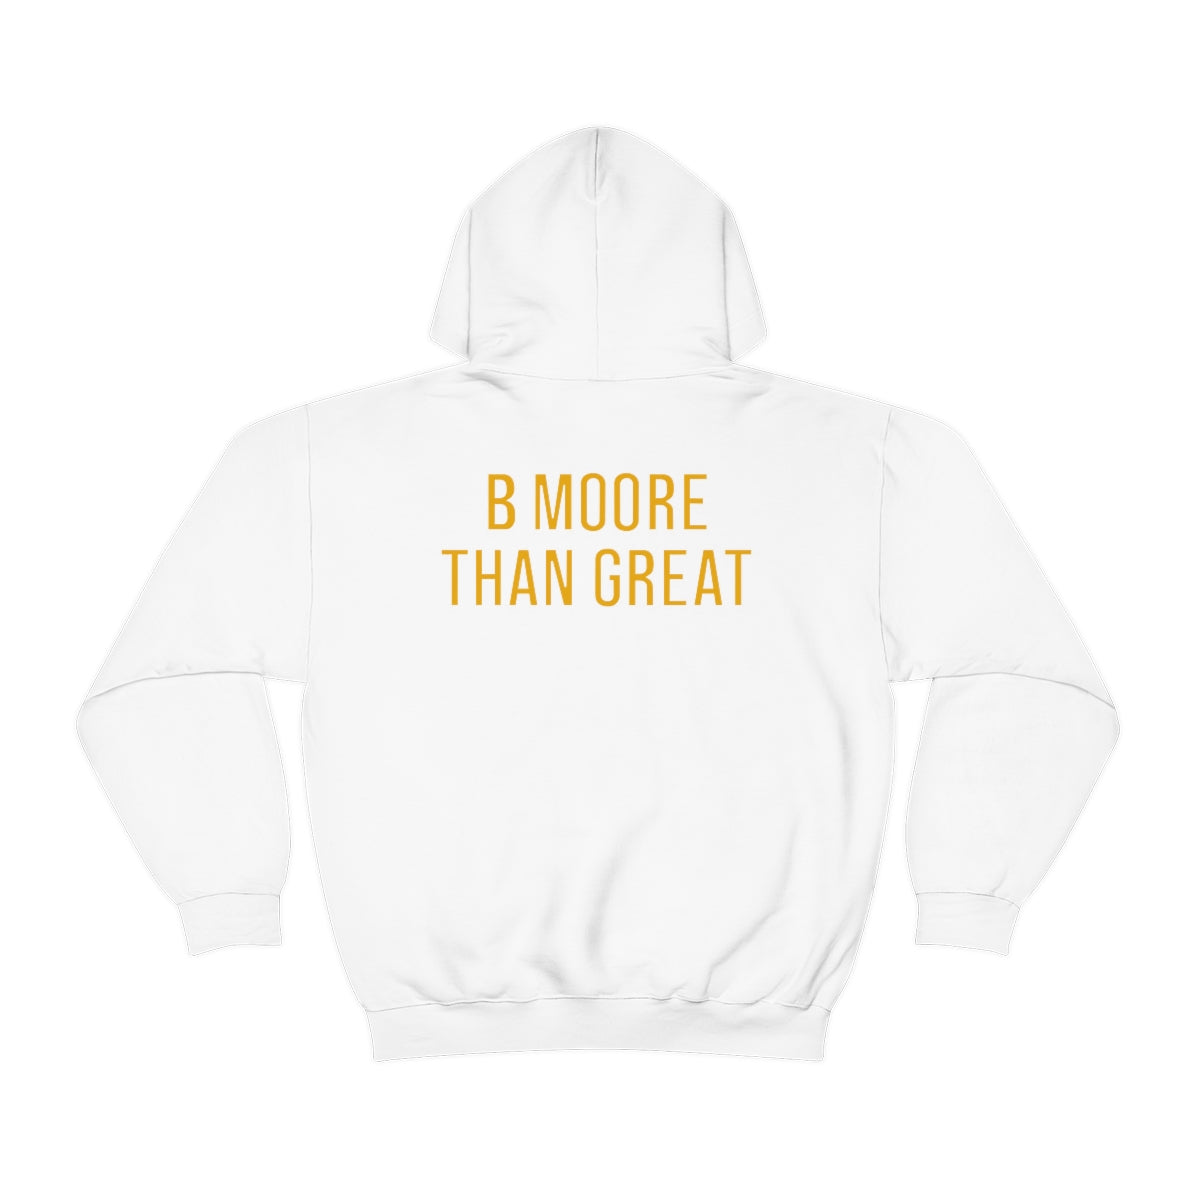 Brian Moore: B Moore Than Great Hoodie (Team Colors)